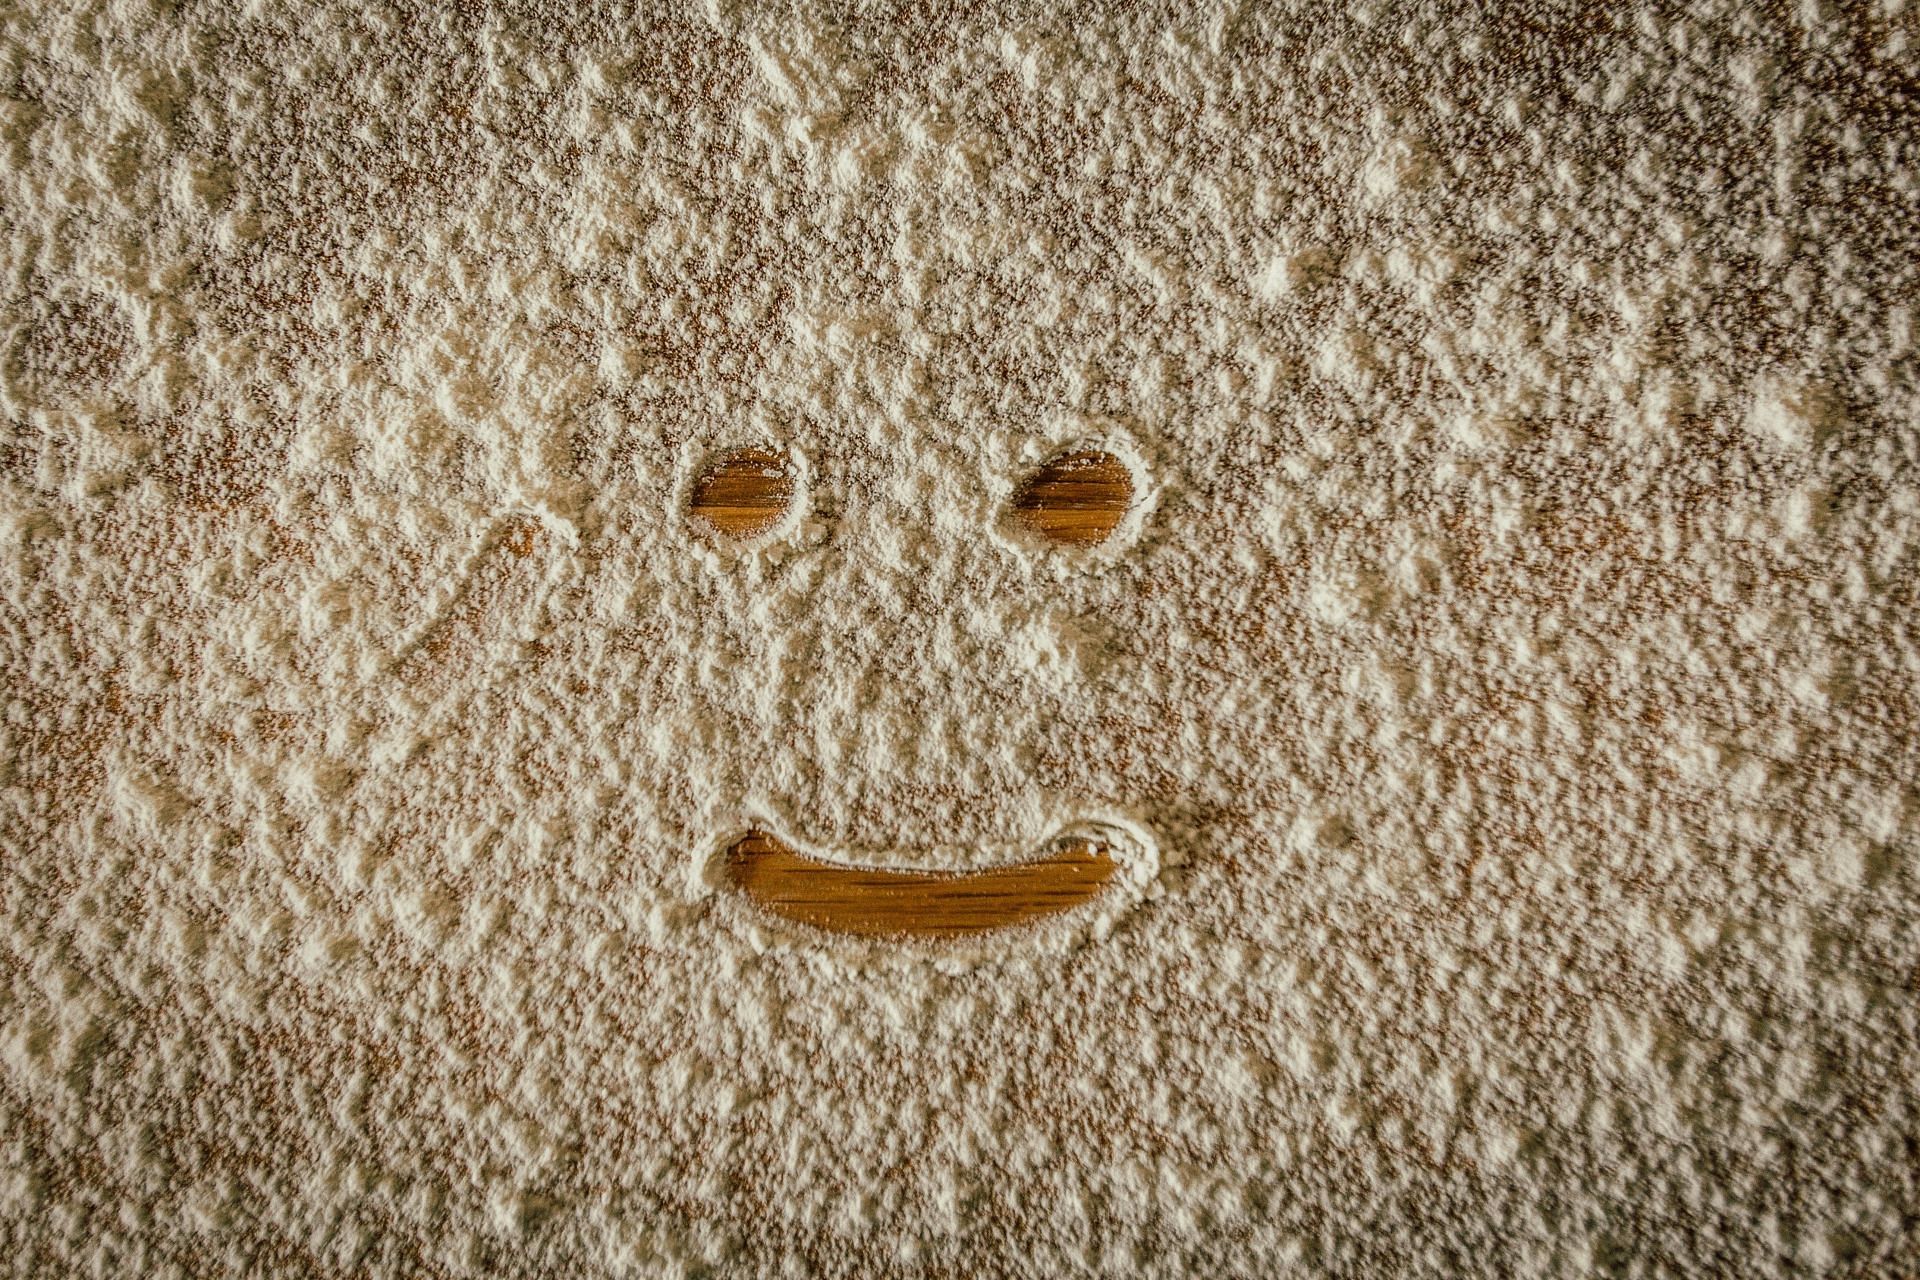 healthiest flour alternatives (image sourced via Pexels / Photo by juan pablo)